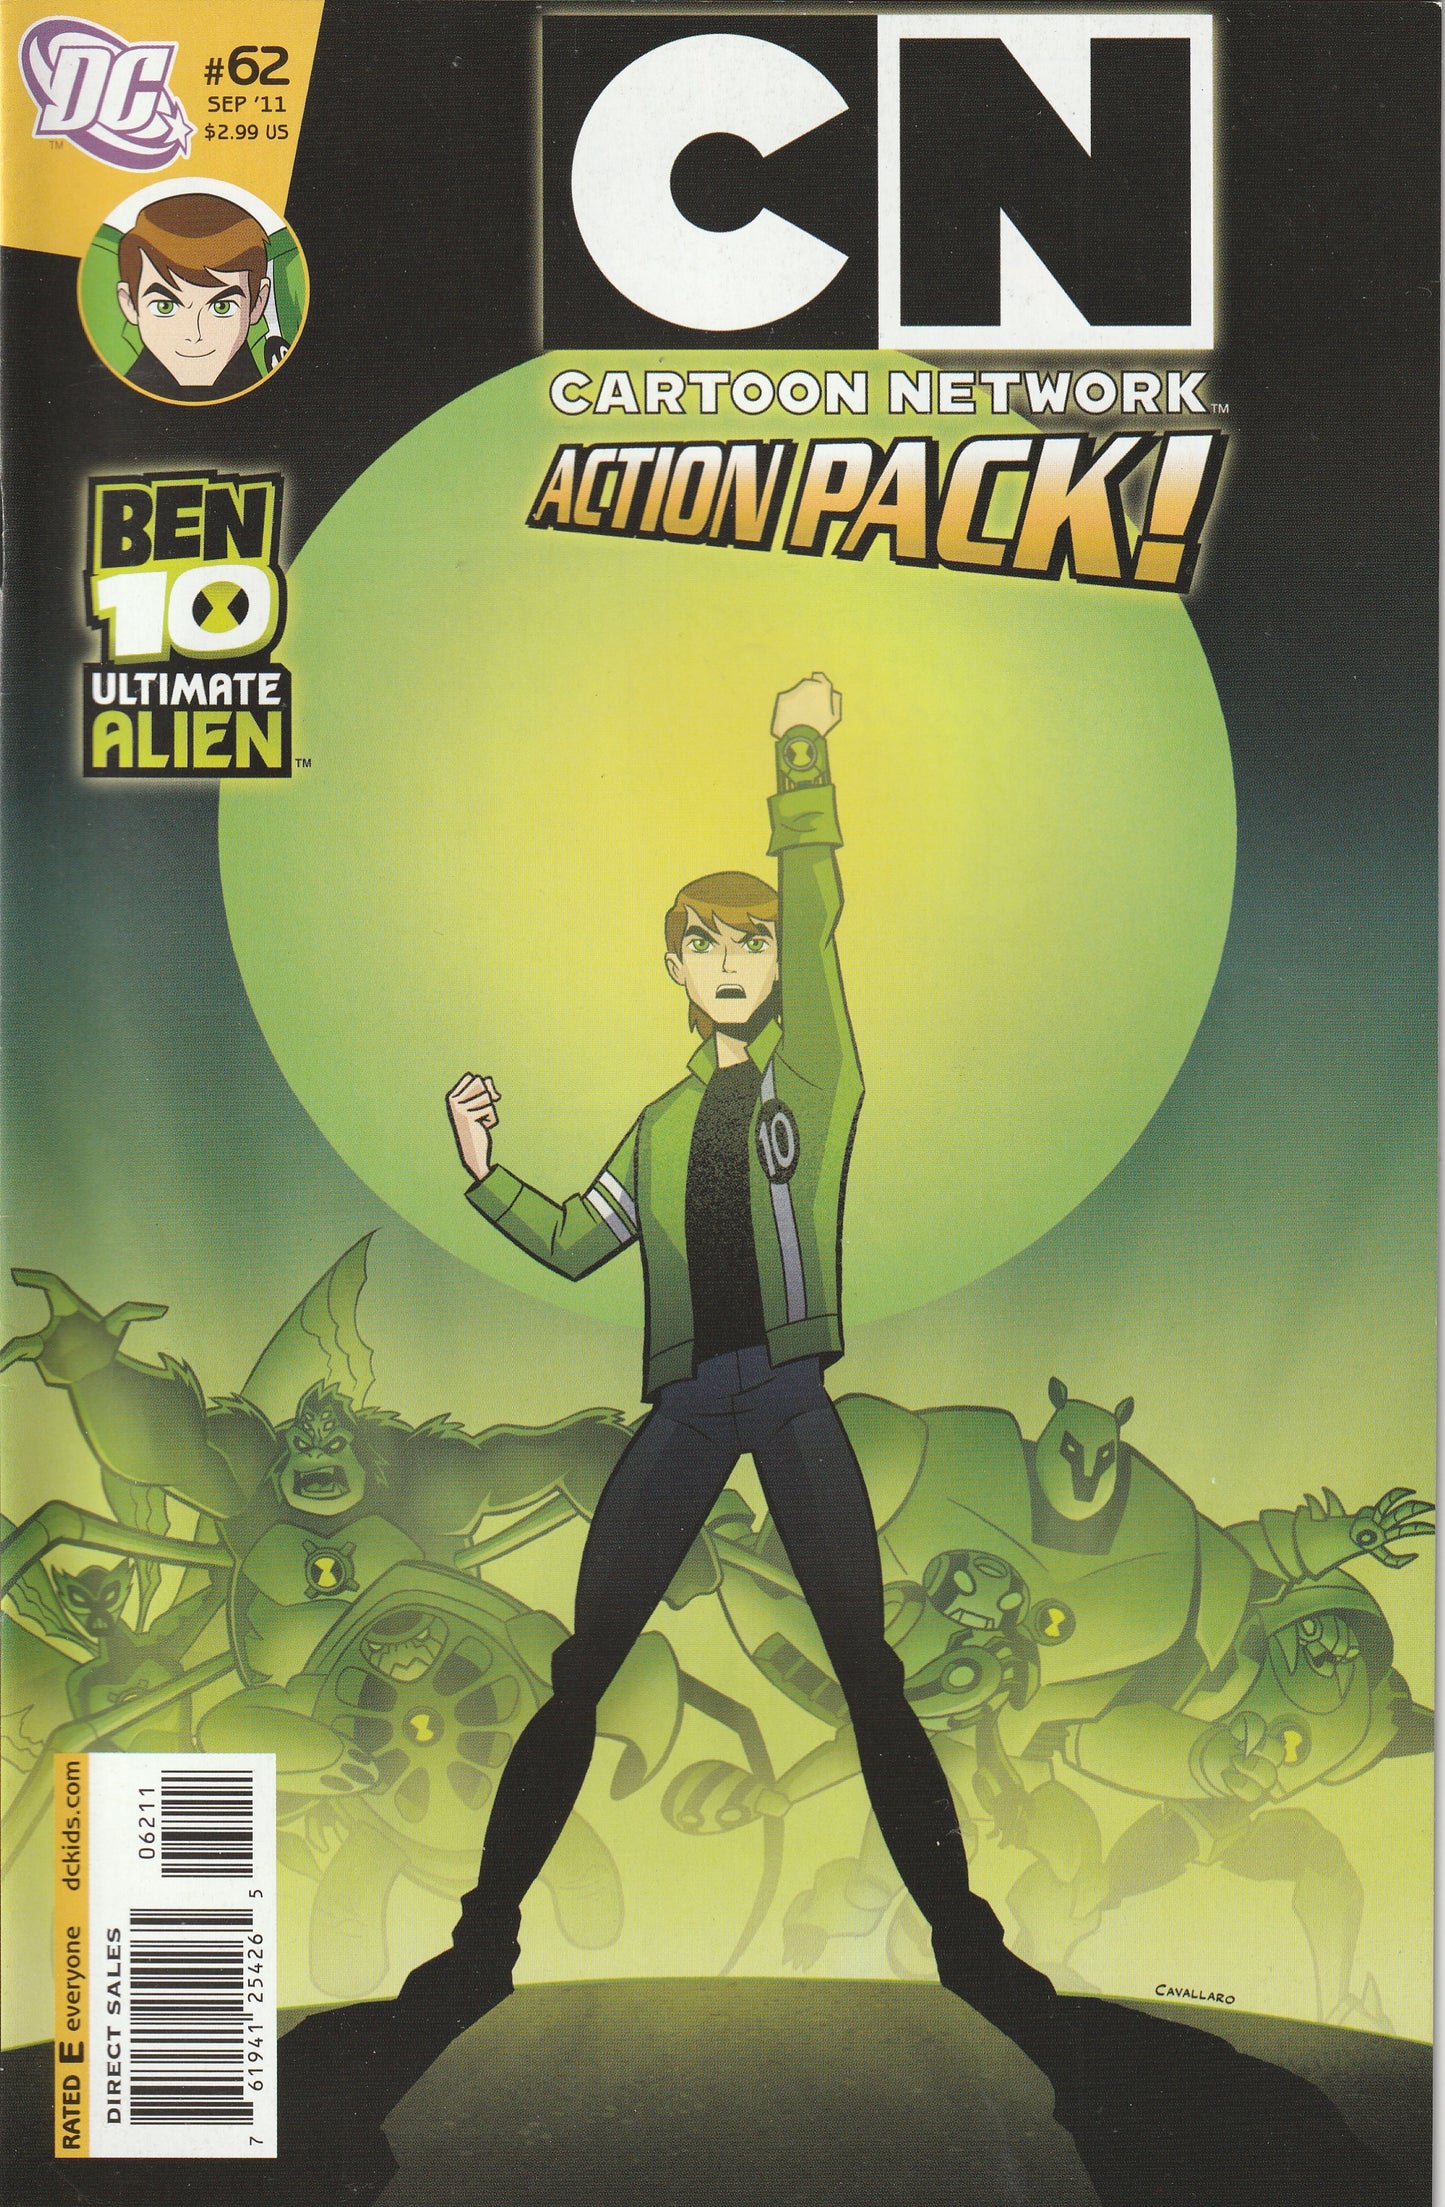 Cartoon Network Action Pack #62 (2011) - Ben 10 Ultimate Alien